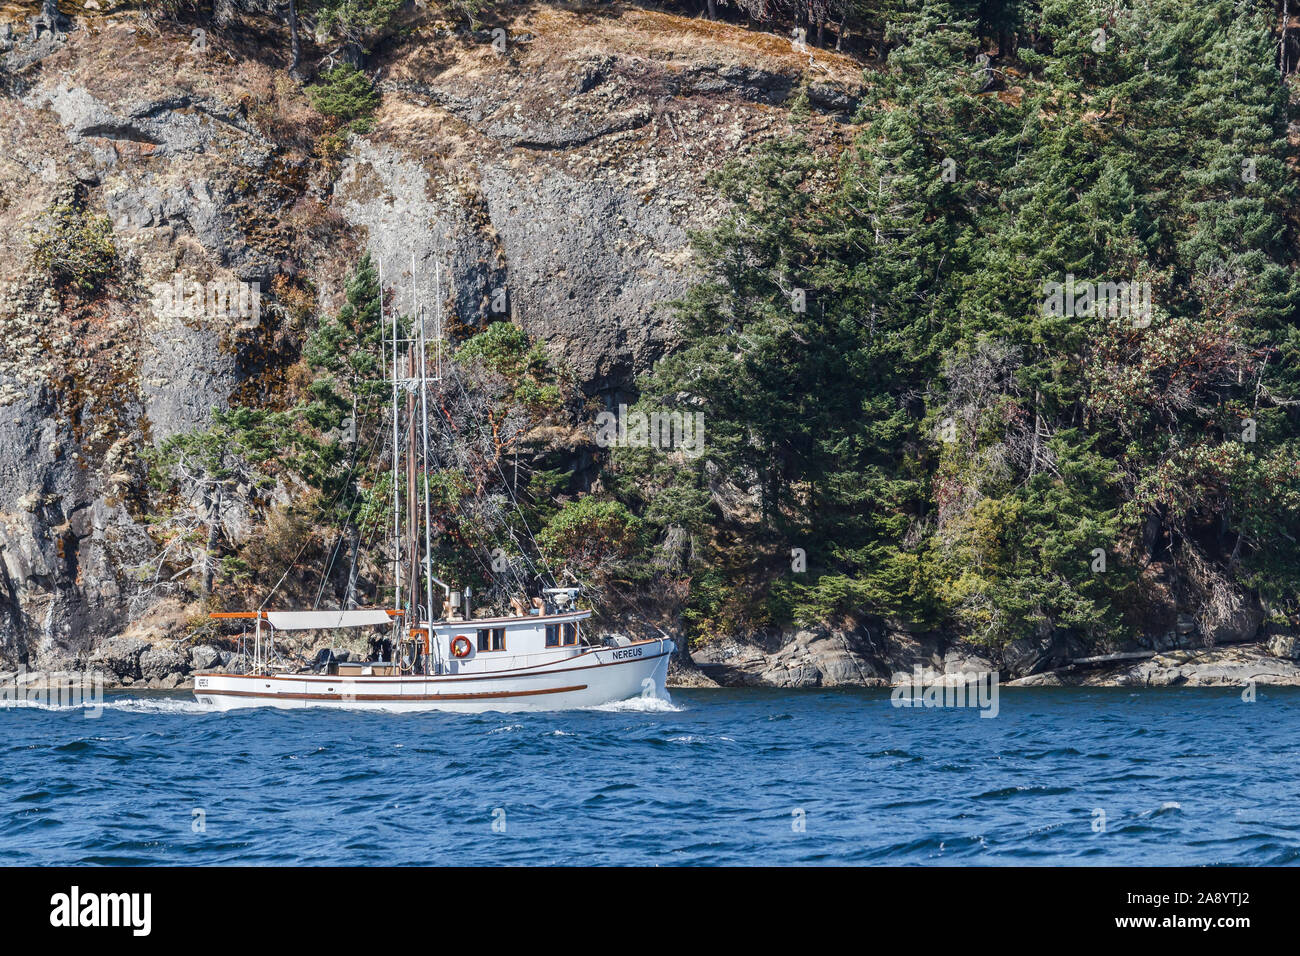 Un ancien navire de pêche commerciale, converti en bateau de plaisance, est en cours, véhicules, à côté d'une côte rocheuse escarpée sur Salt Spring Island, en Colombie-Britannique. Banque D'Images